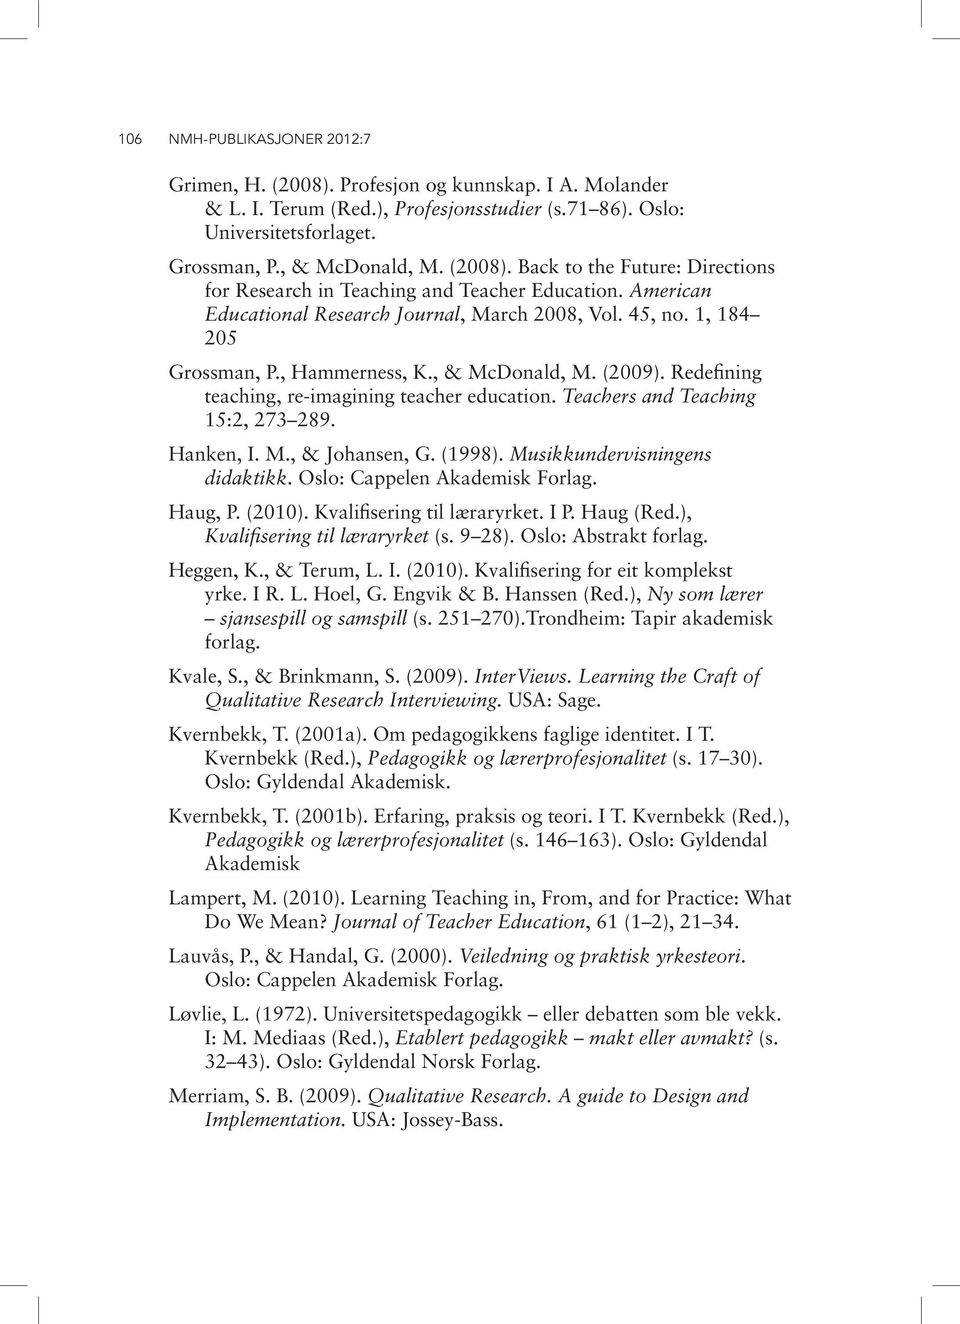 Teachers and Teaching 15:2, 273 289. Hanken, I. M., & Johansen, G. (1998). Musikkundervisningens didaktikk. Oslo: Cappelen Akademisk Forlag. Haug, P. (2010). Kvalifisering til læraryrket. I P.